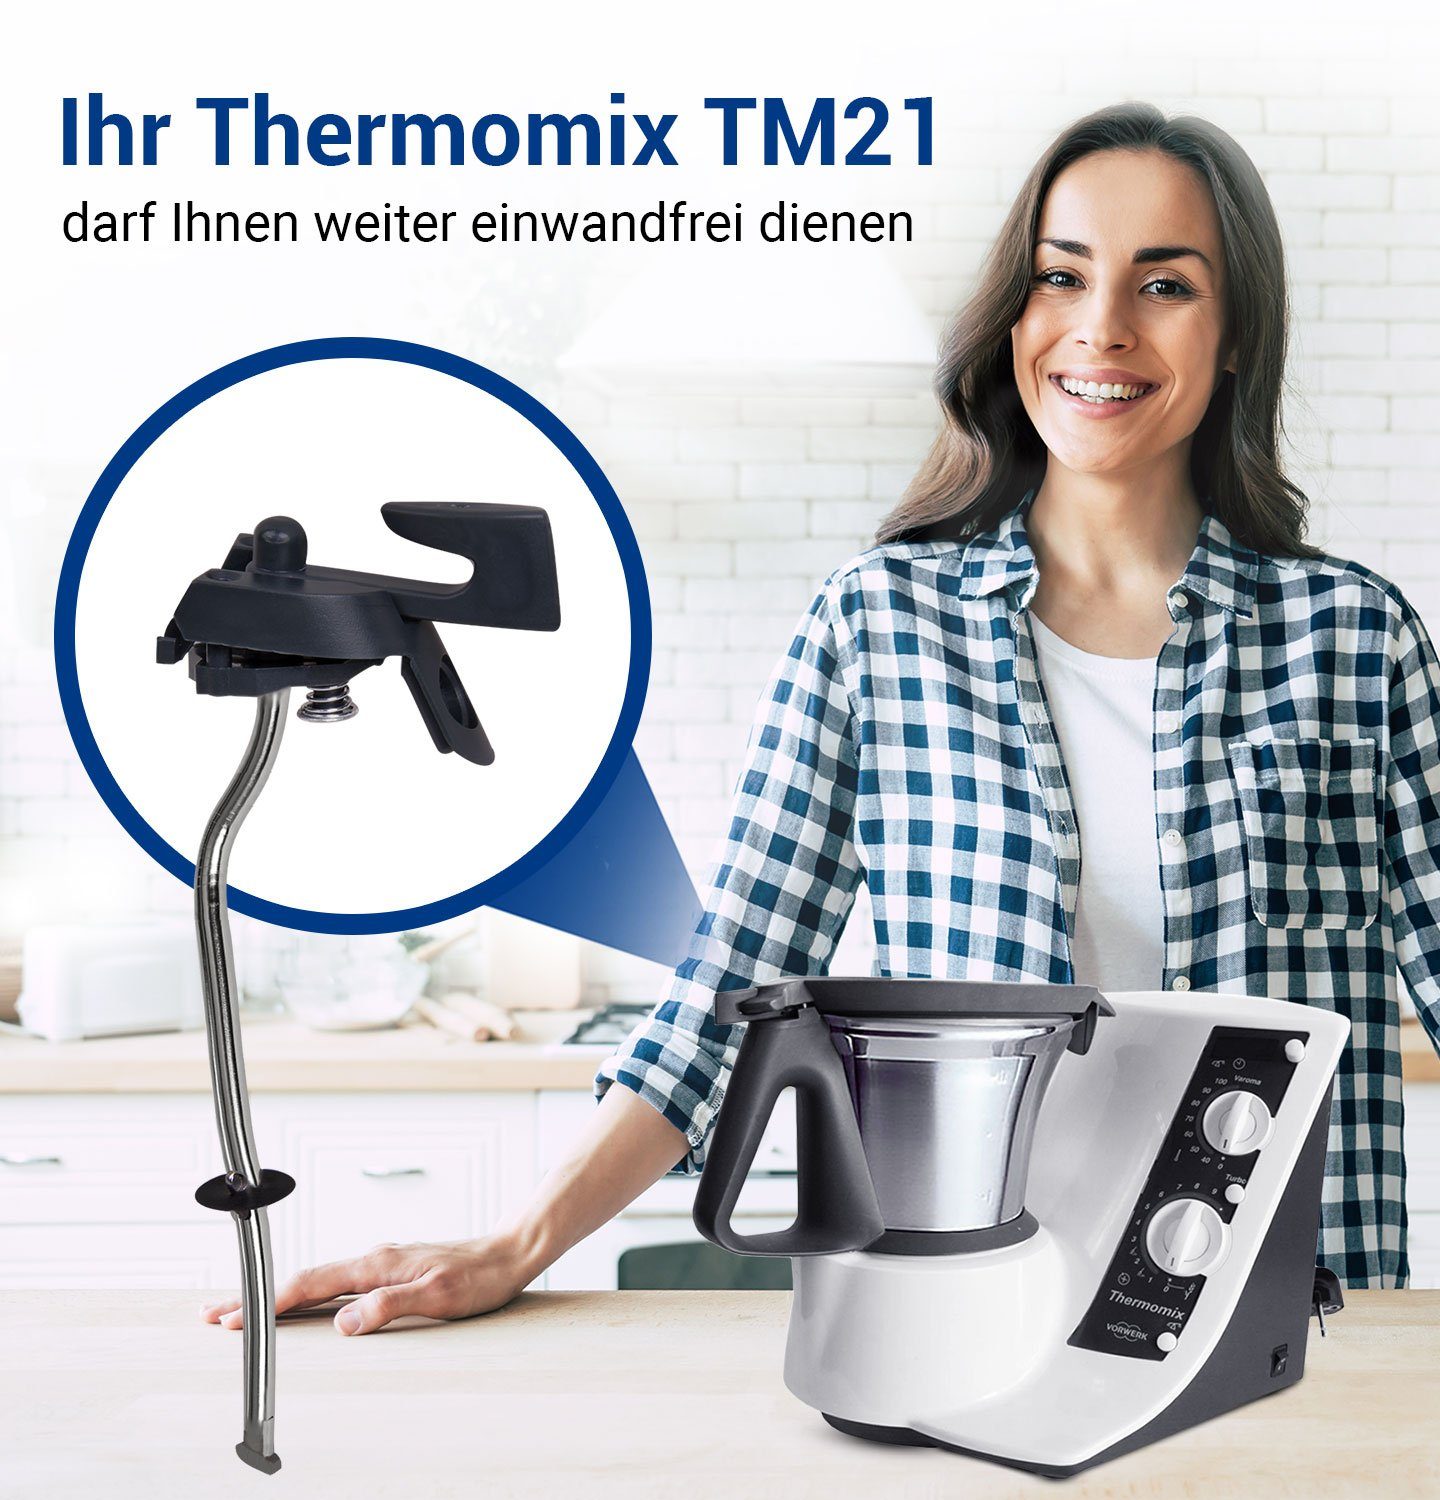 für Ersatz Vorwerk, für VIOKS Verriegelungshebel Küchenmaschine Thermomix Sicherungshalter TM21